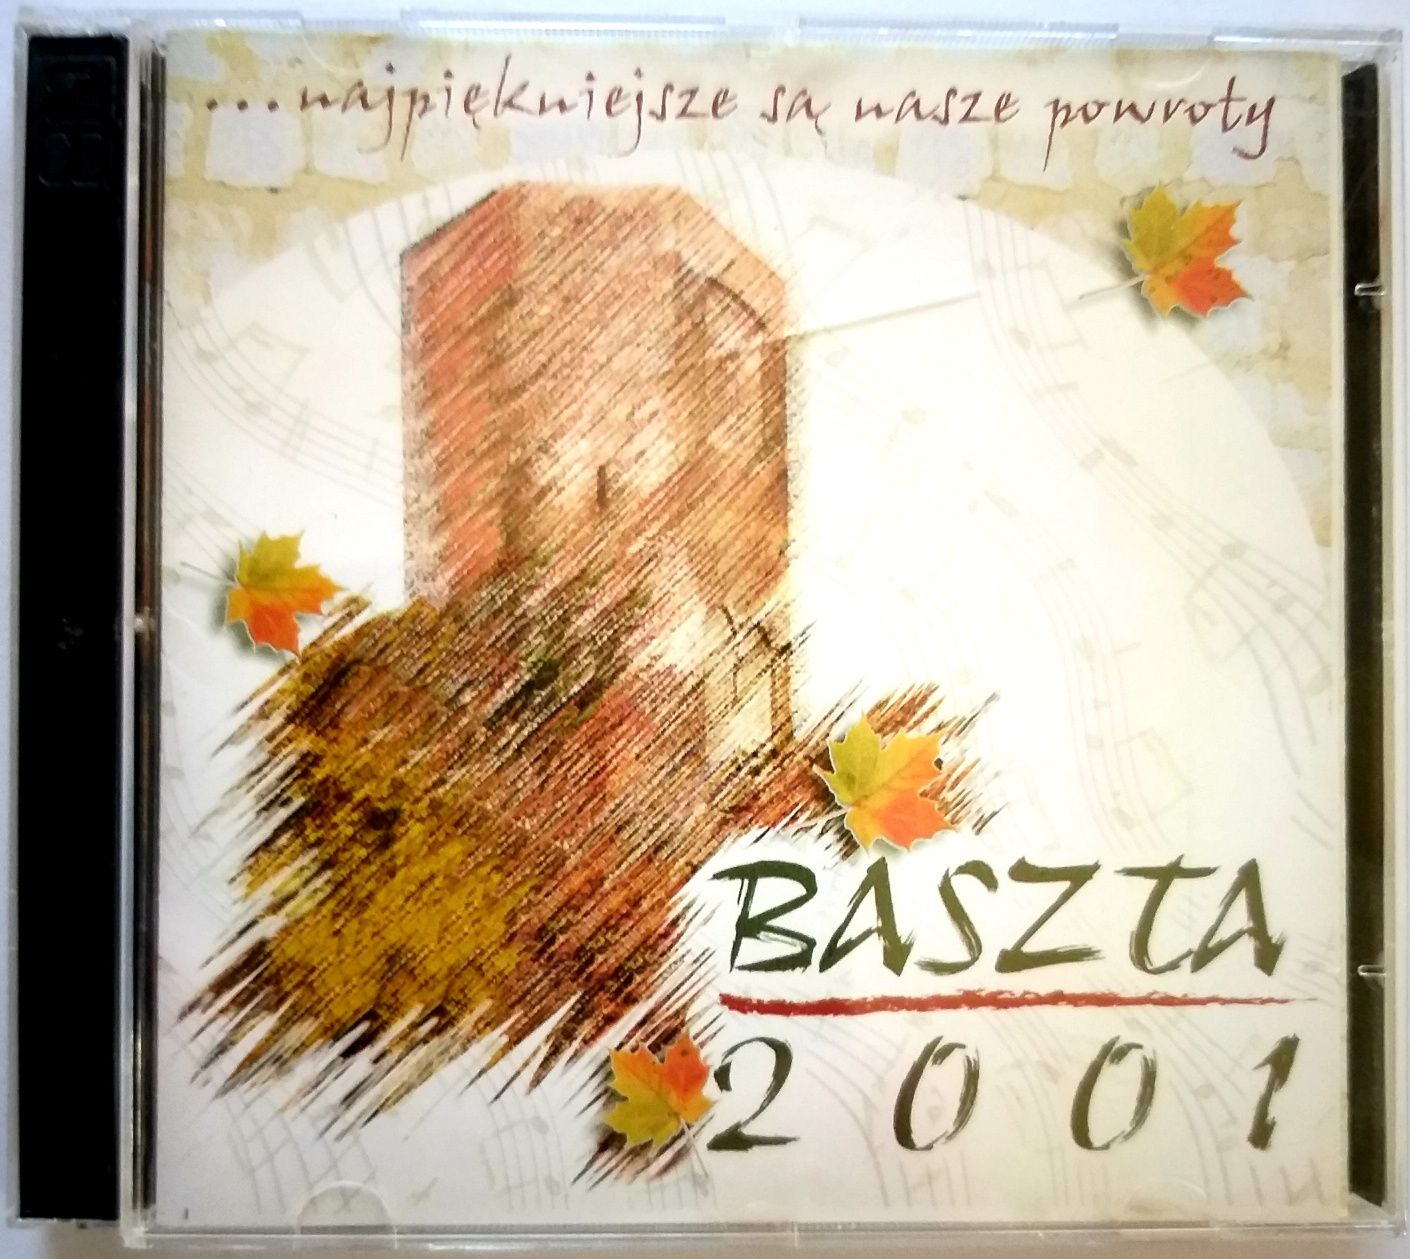 Baszta 2001 2CD Dauszkiewicz Wasik Czyżykiewicz Tomczak Wożniak